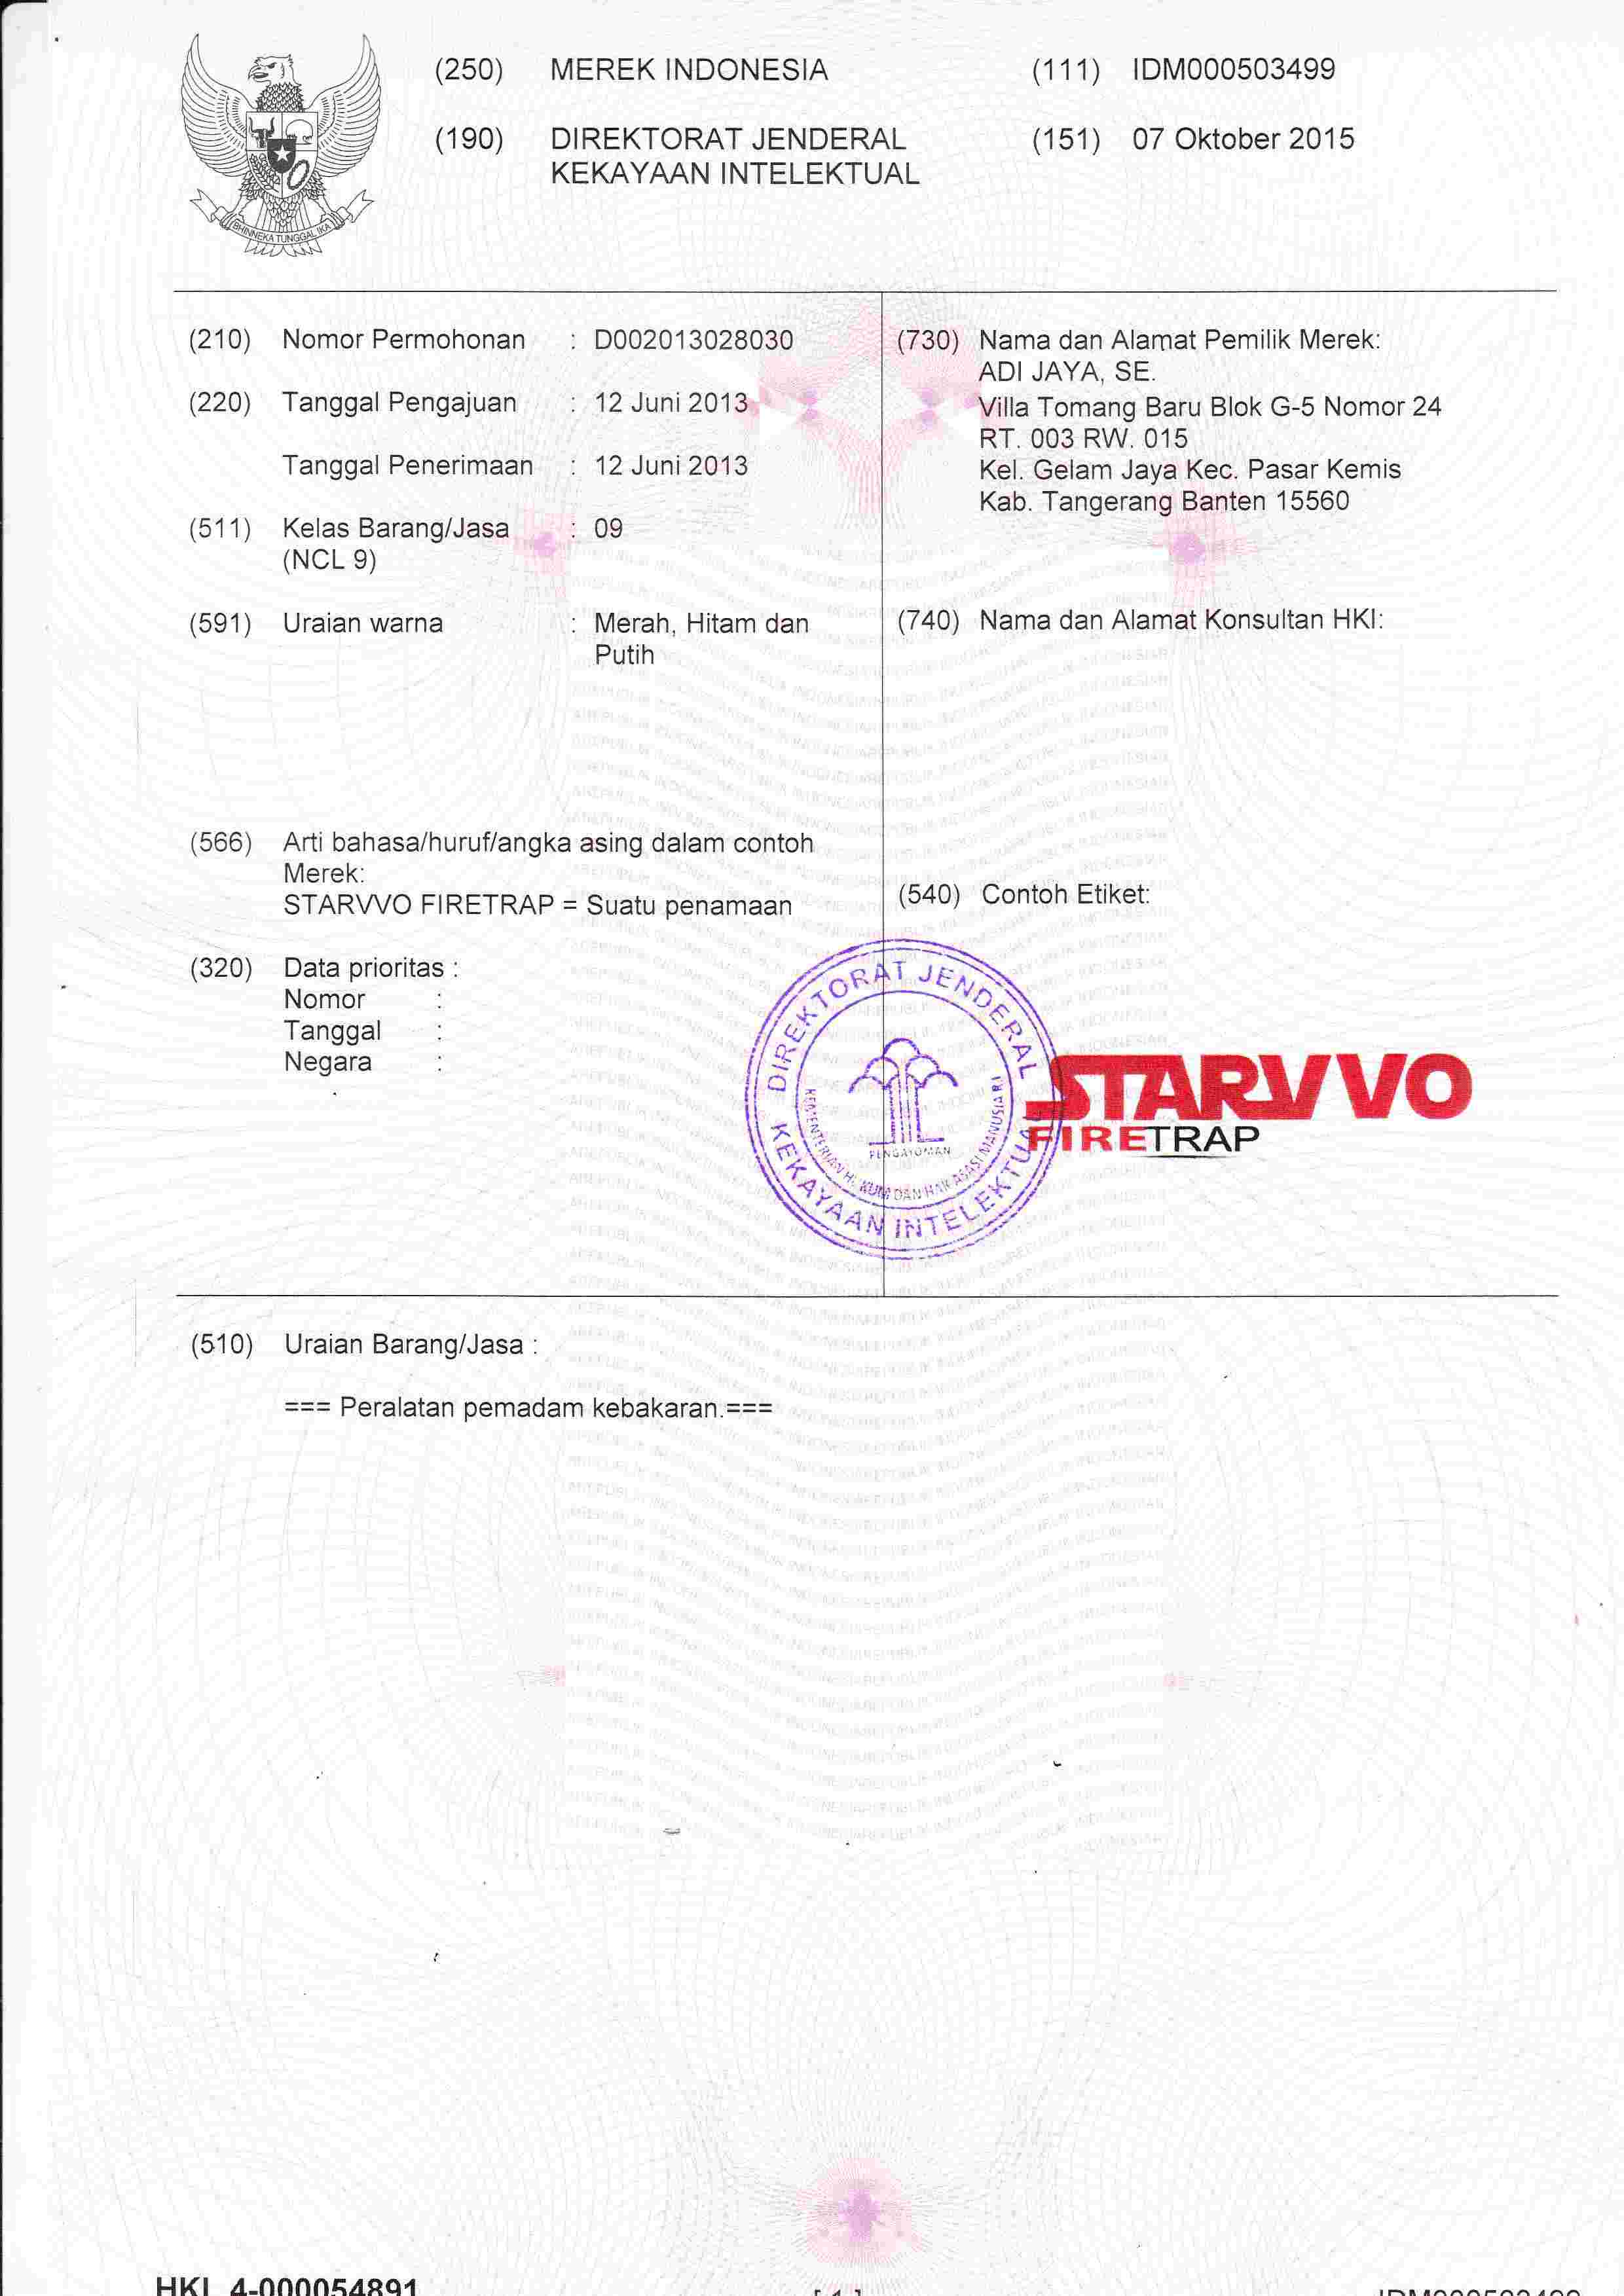 sertifikat-merek-starvvo-firetrap-2.jpg